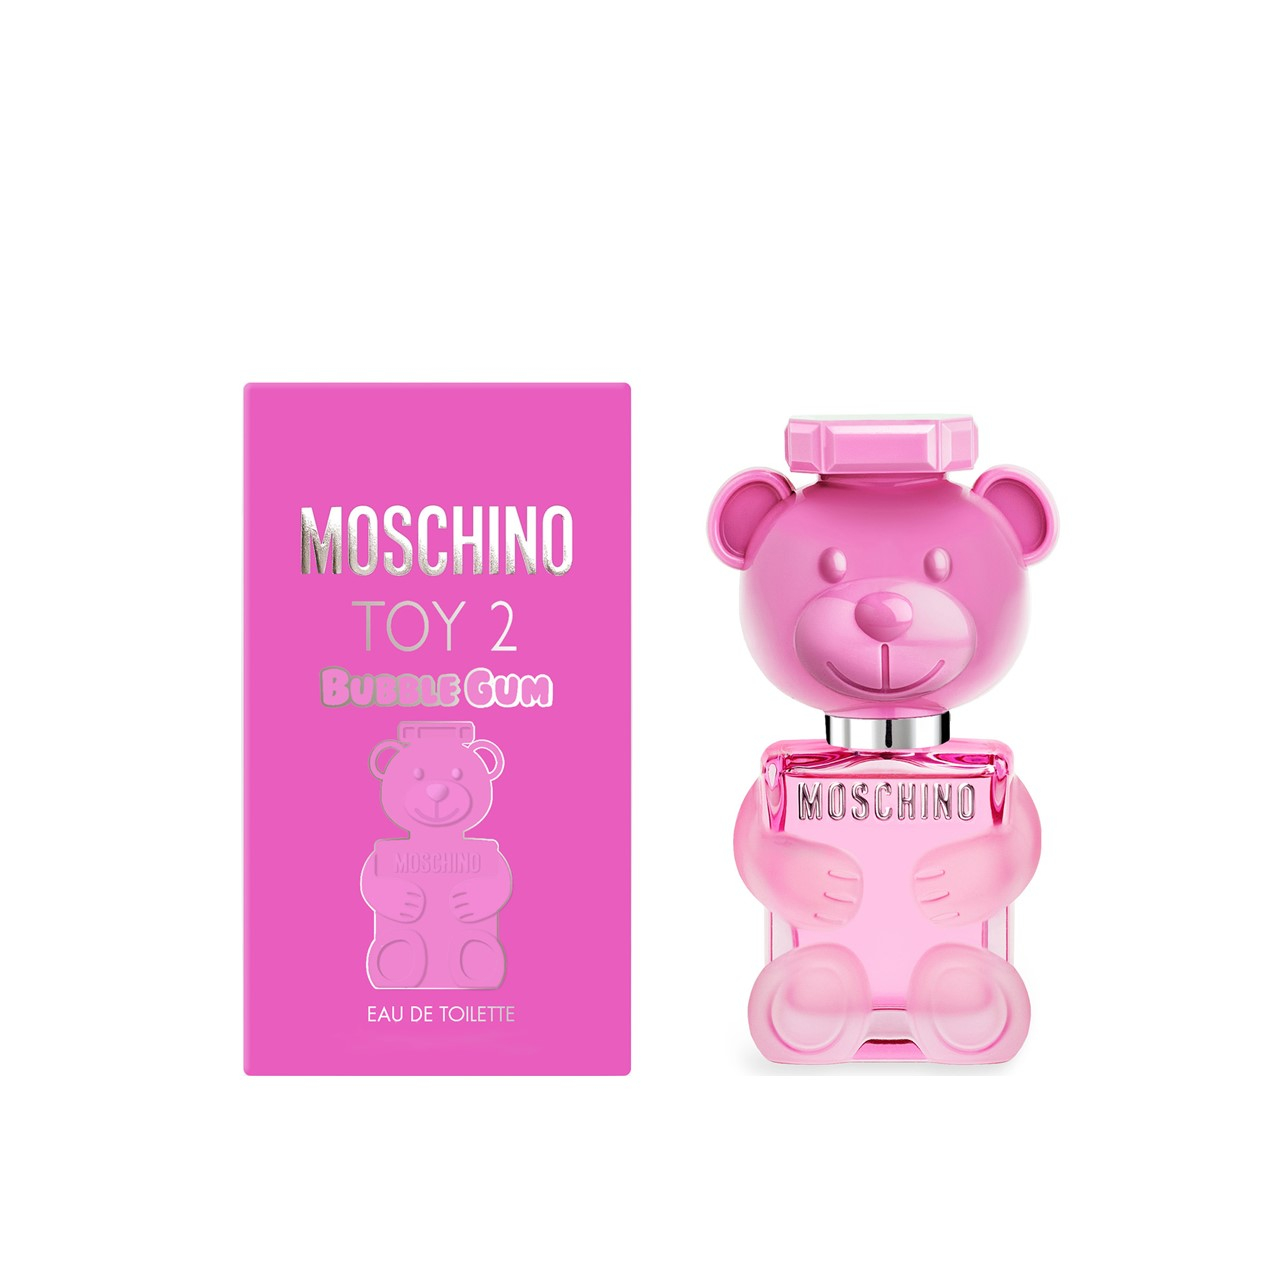 Moschino Toy 2 Bubble Gum Eau de Toilette 50ml (1.7fl oz)